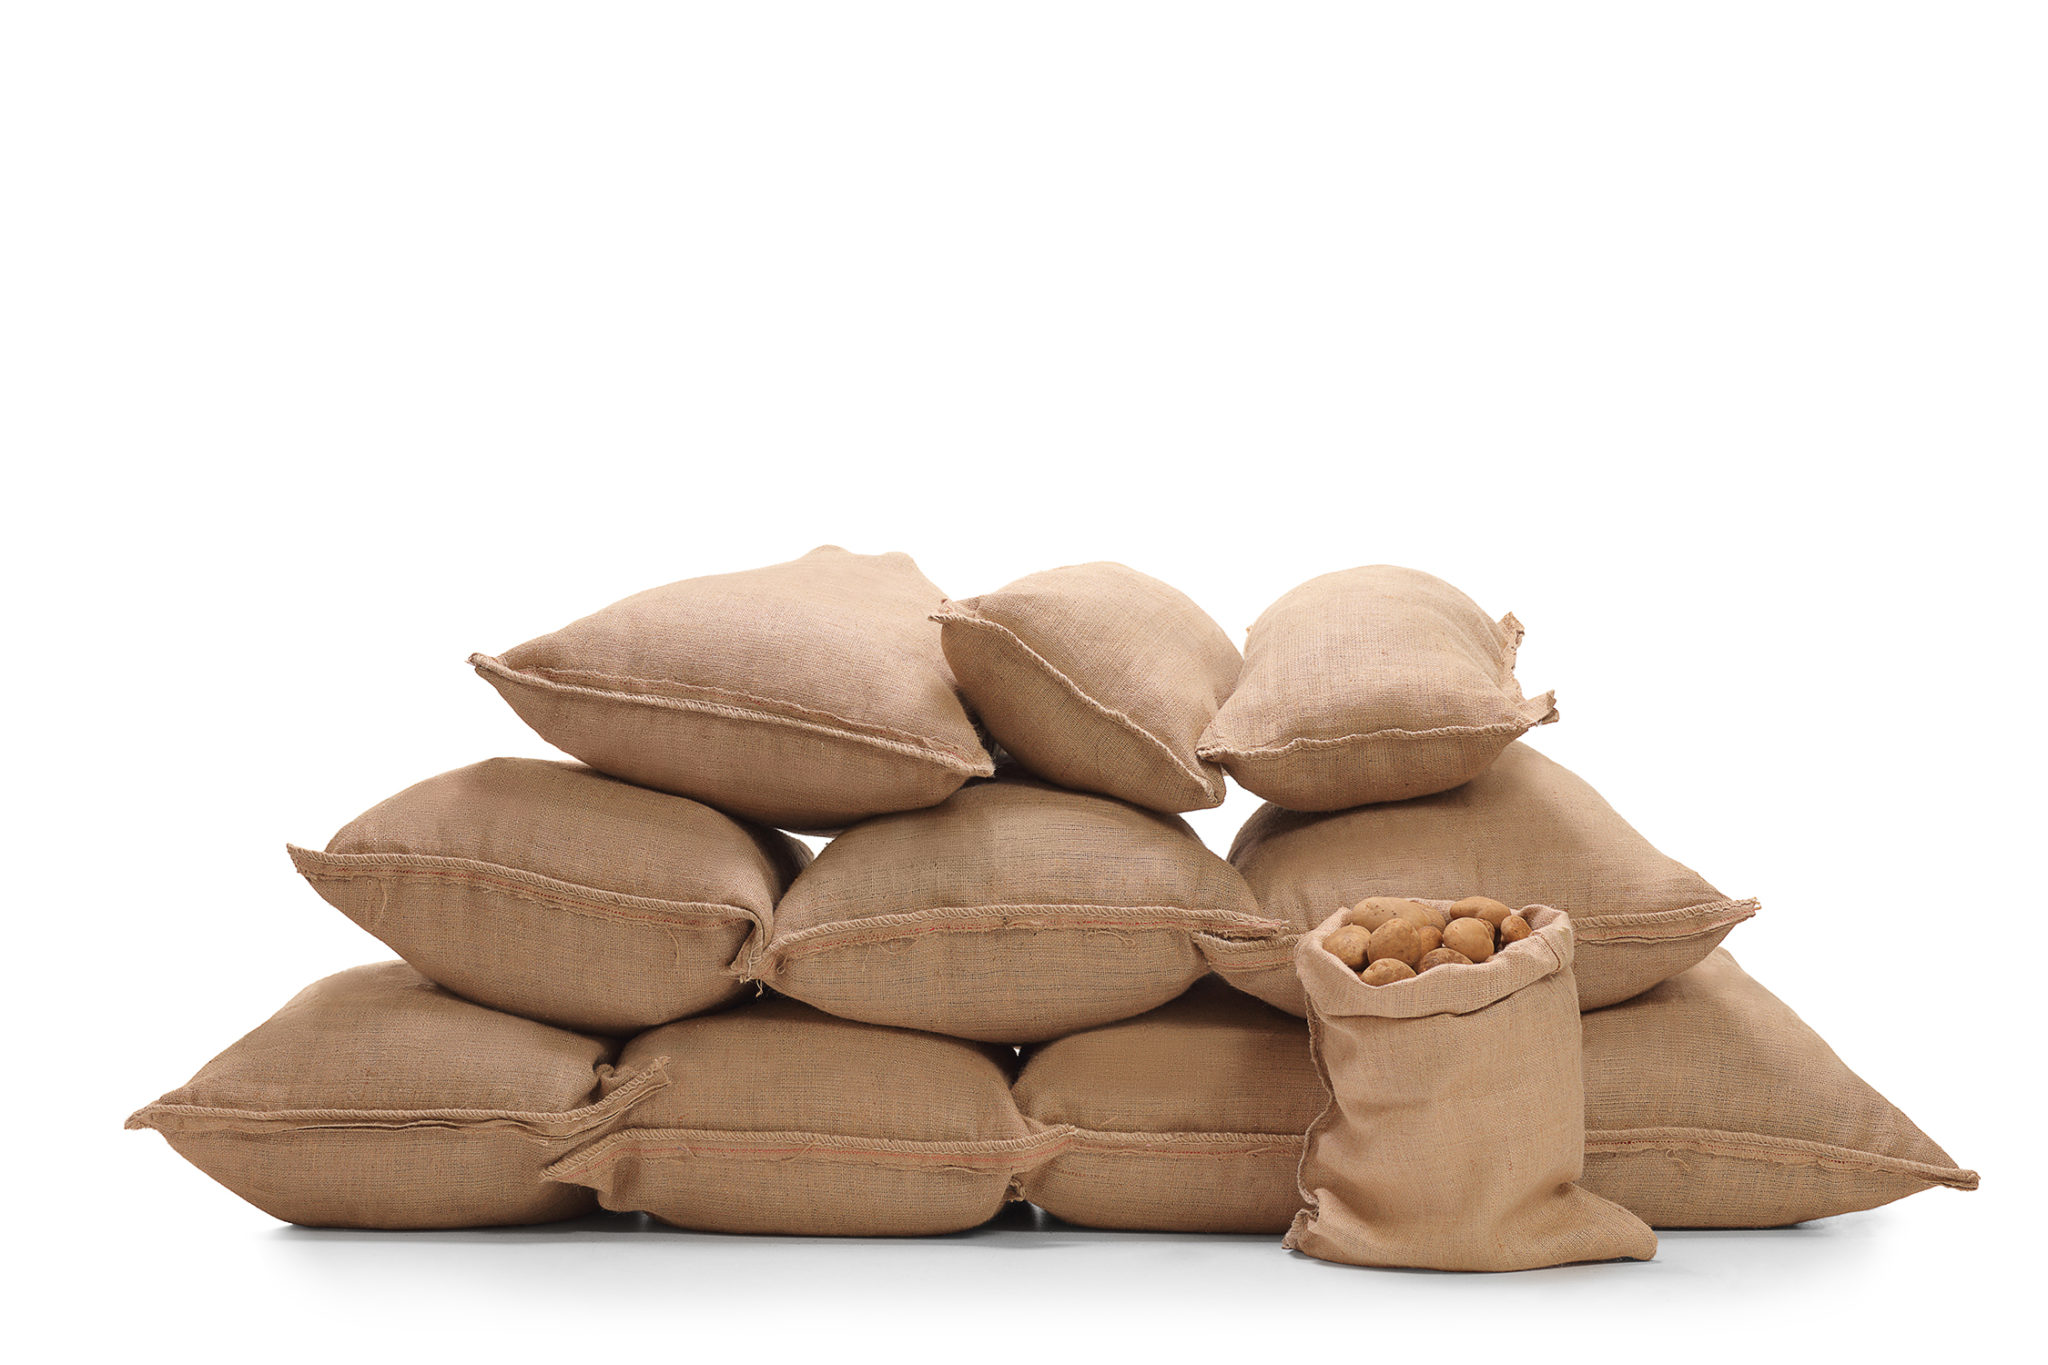 Burlap sacks and bags in brown